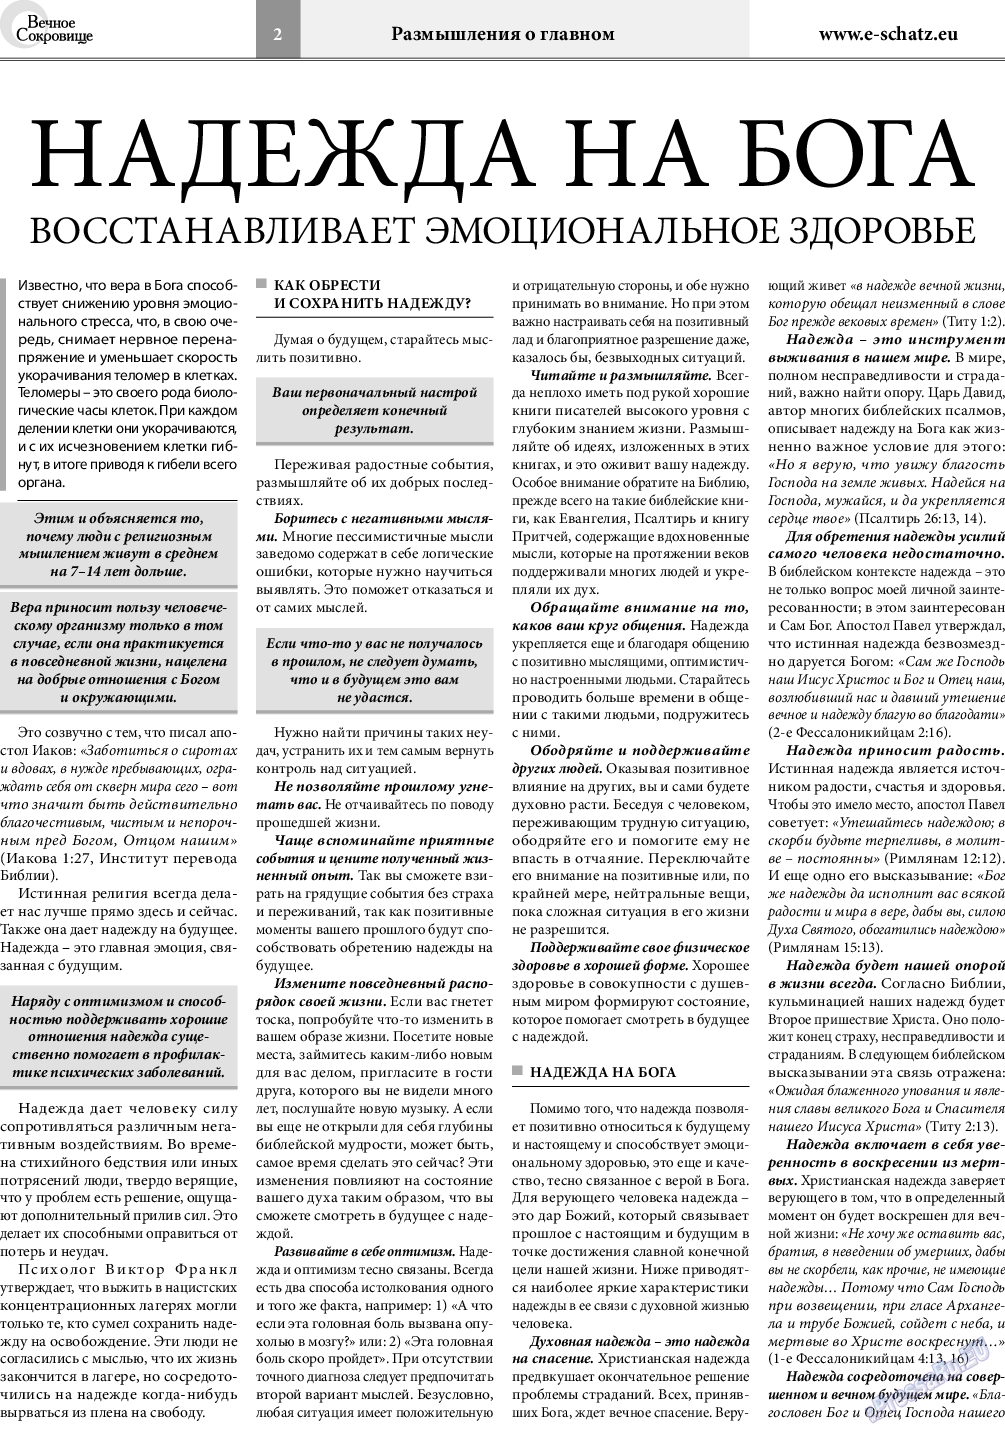 Вечное сокровище, газета. 2019 №1 стр.2